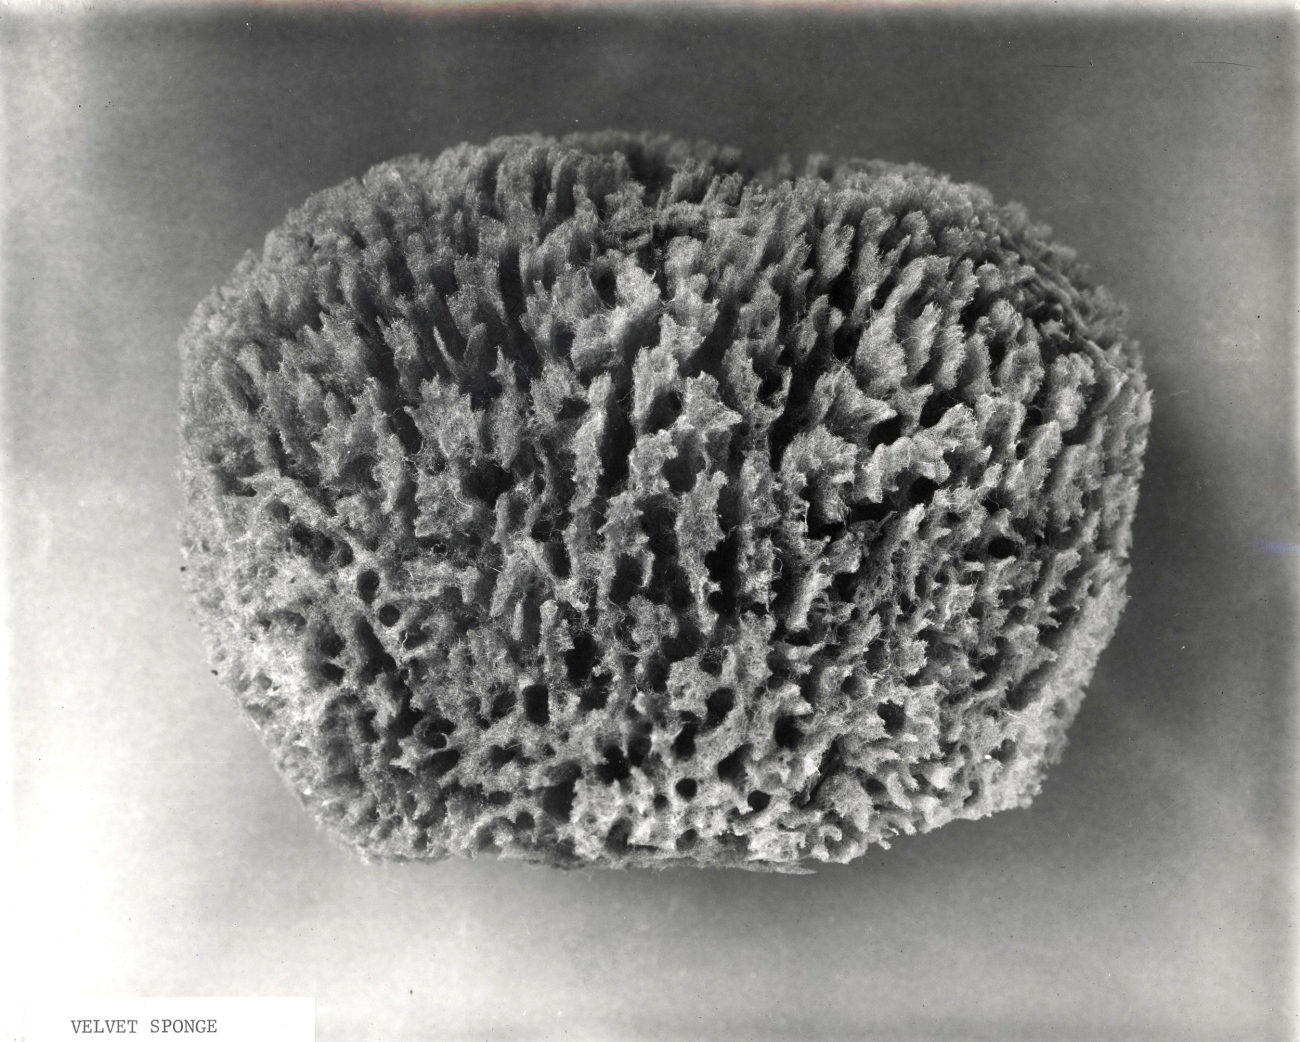 Velvet sponge - specimen from Cuba